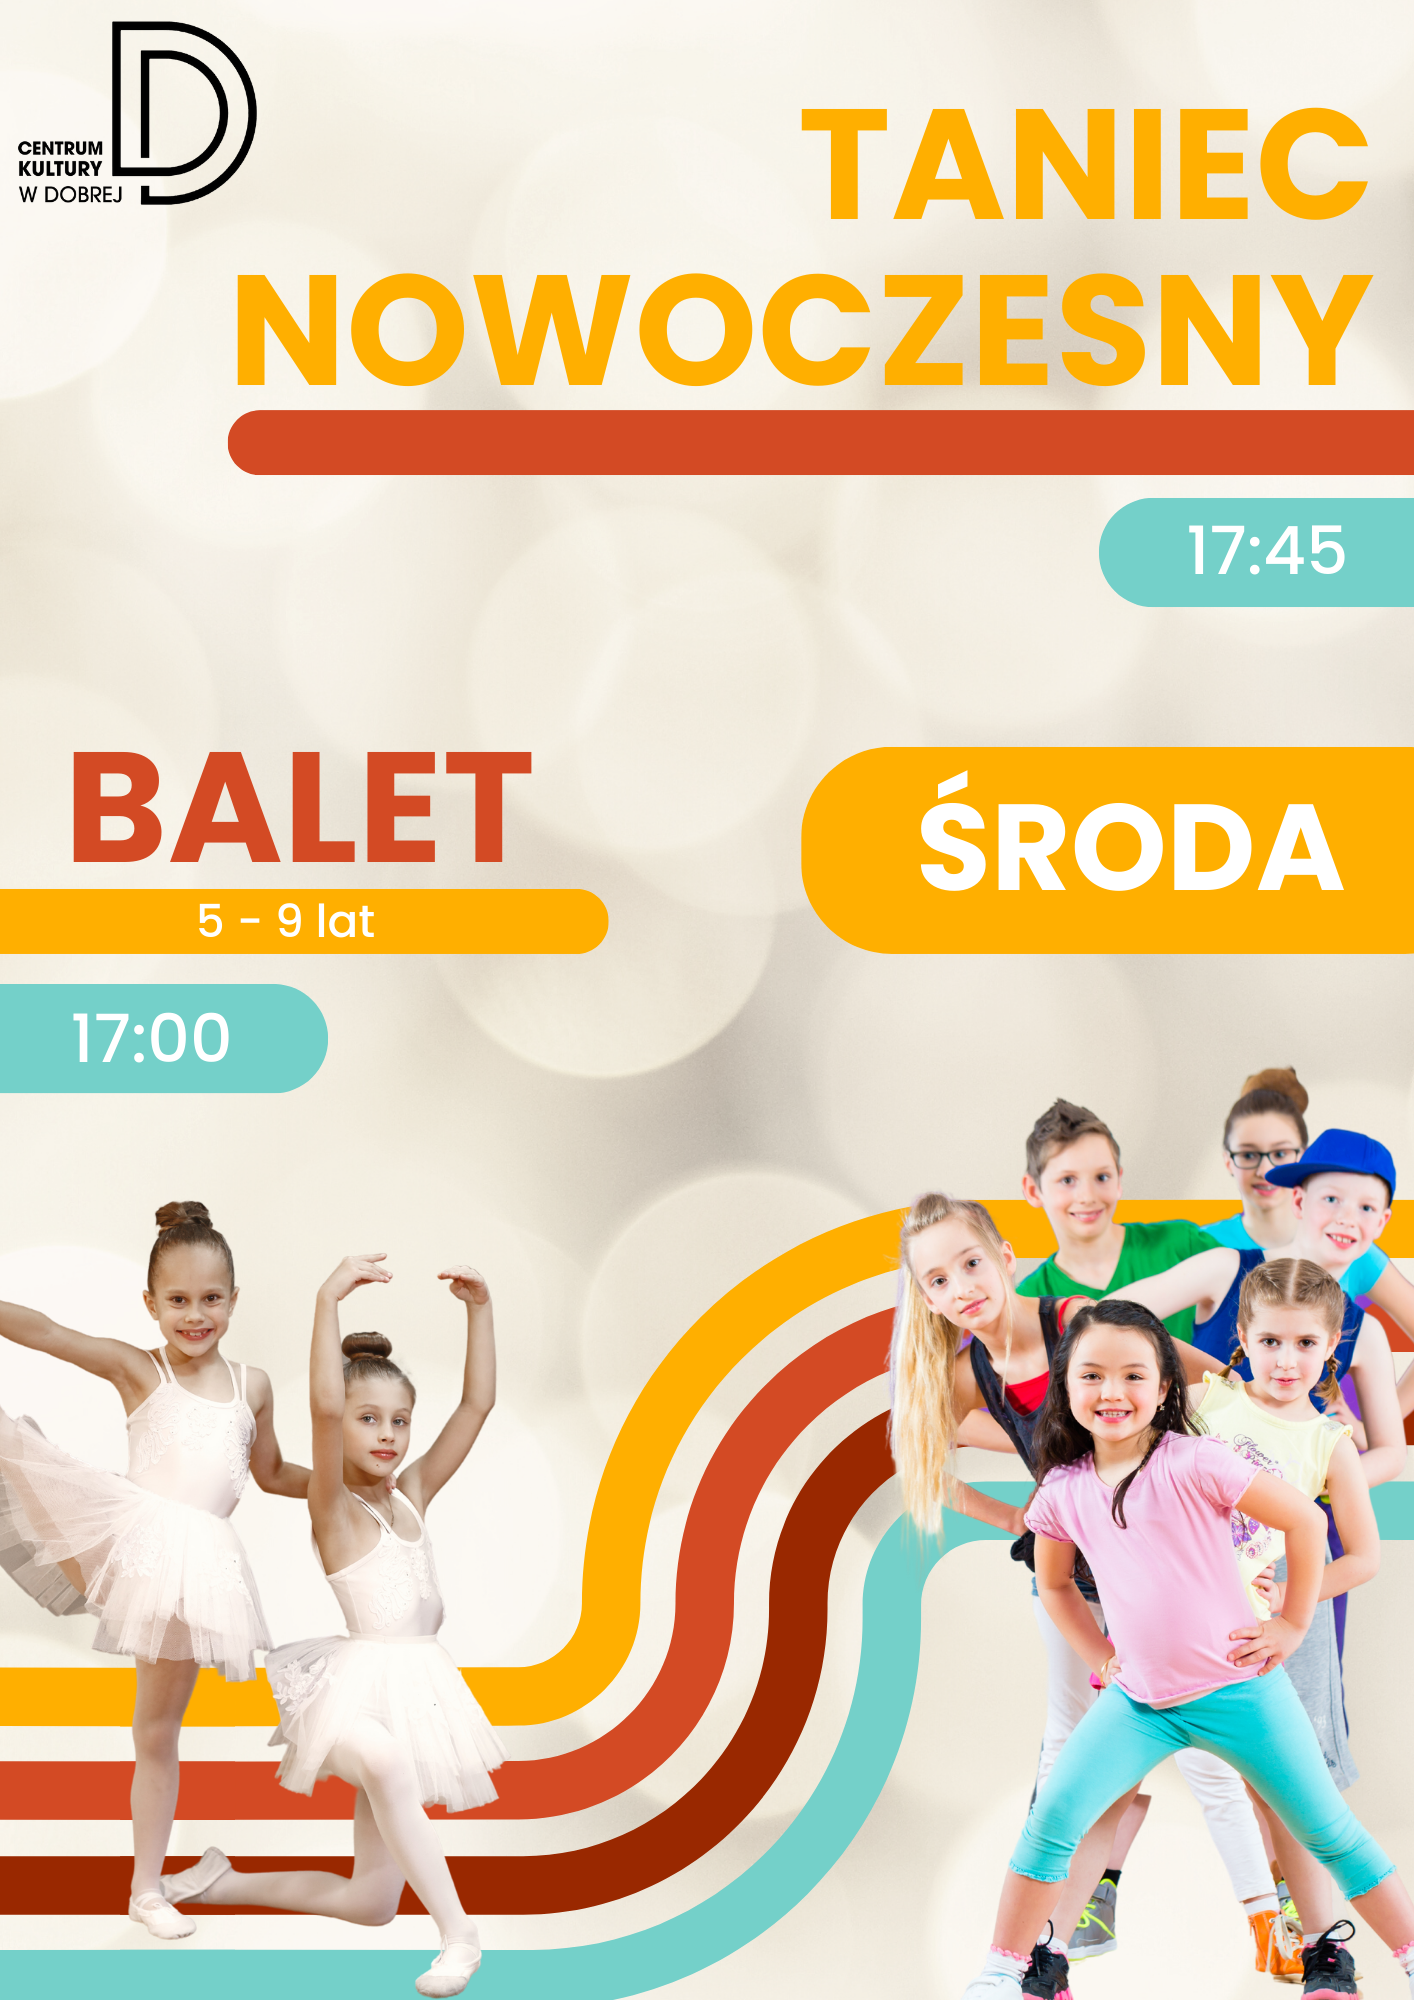 You are currently viewing Balet i taniec nowoczesny w CK – ZAPRASZAMY!